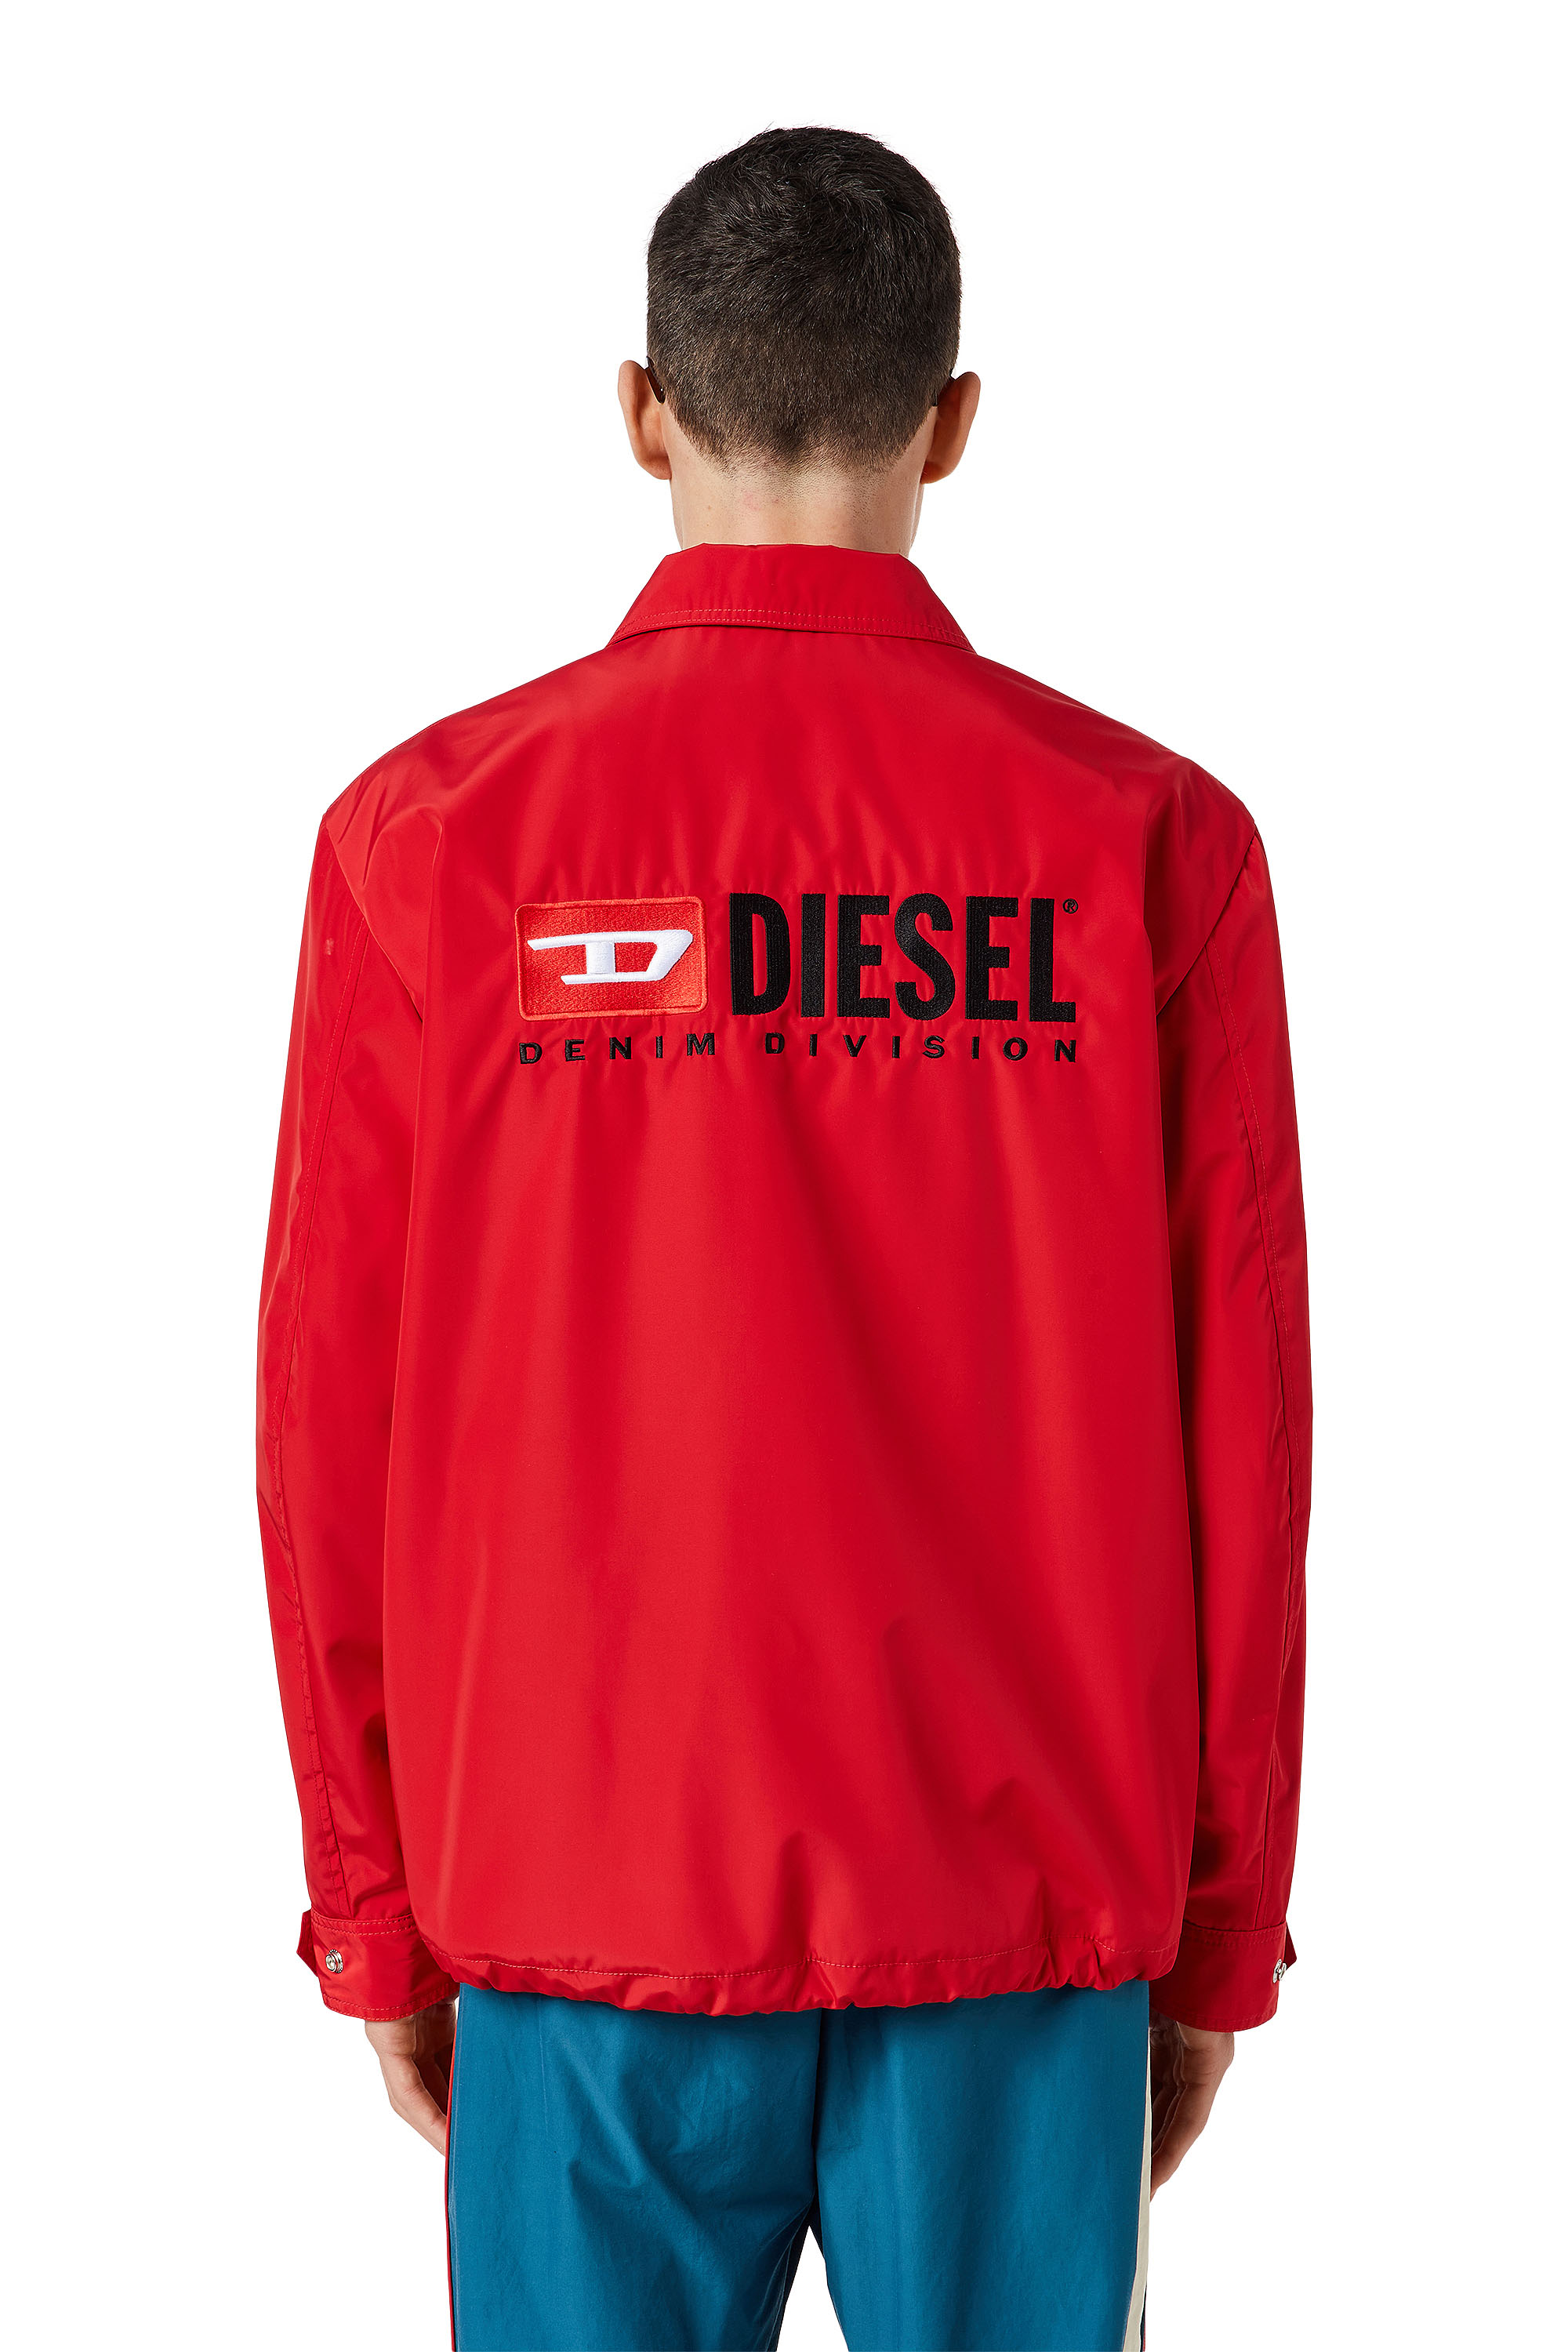 Diesel - J-COAL-NP, Red - Image 3